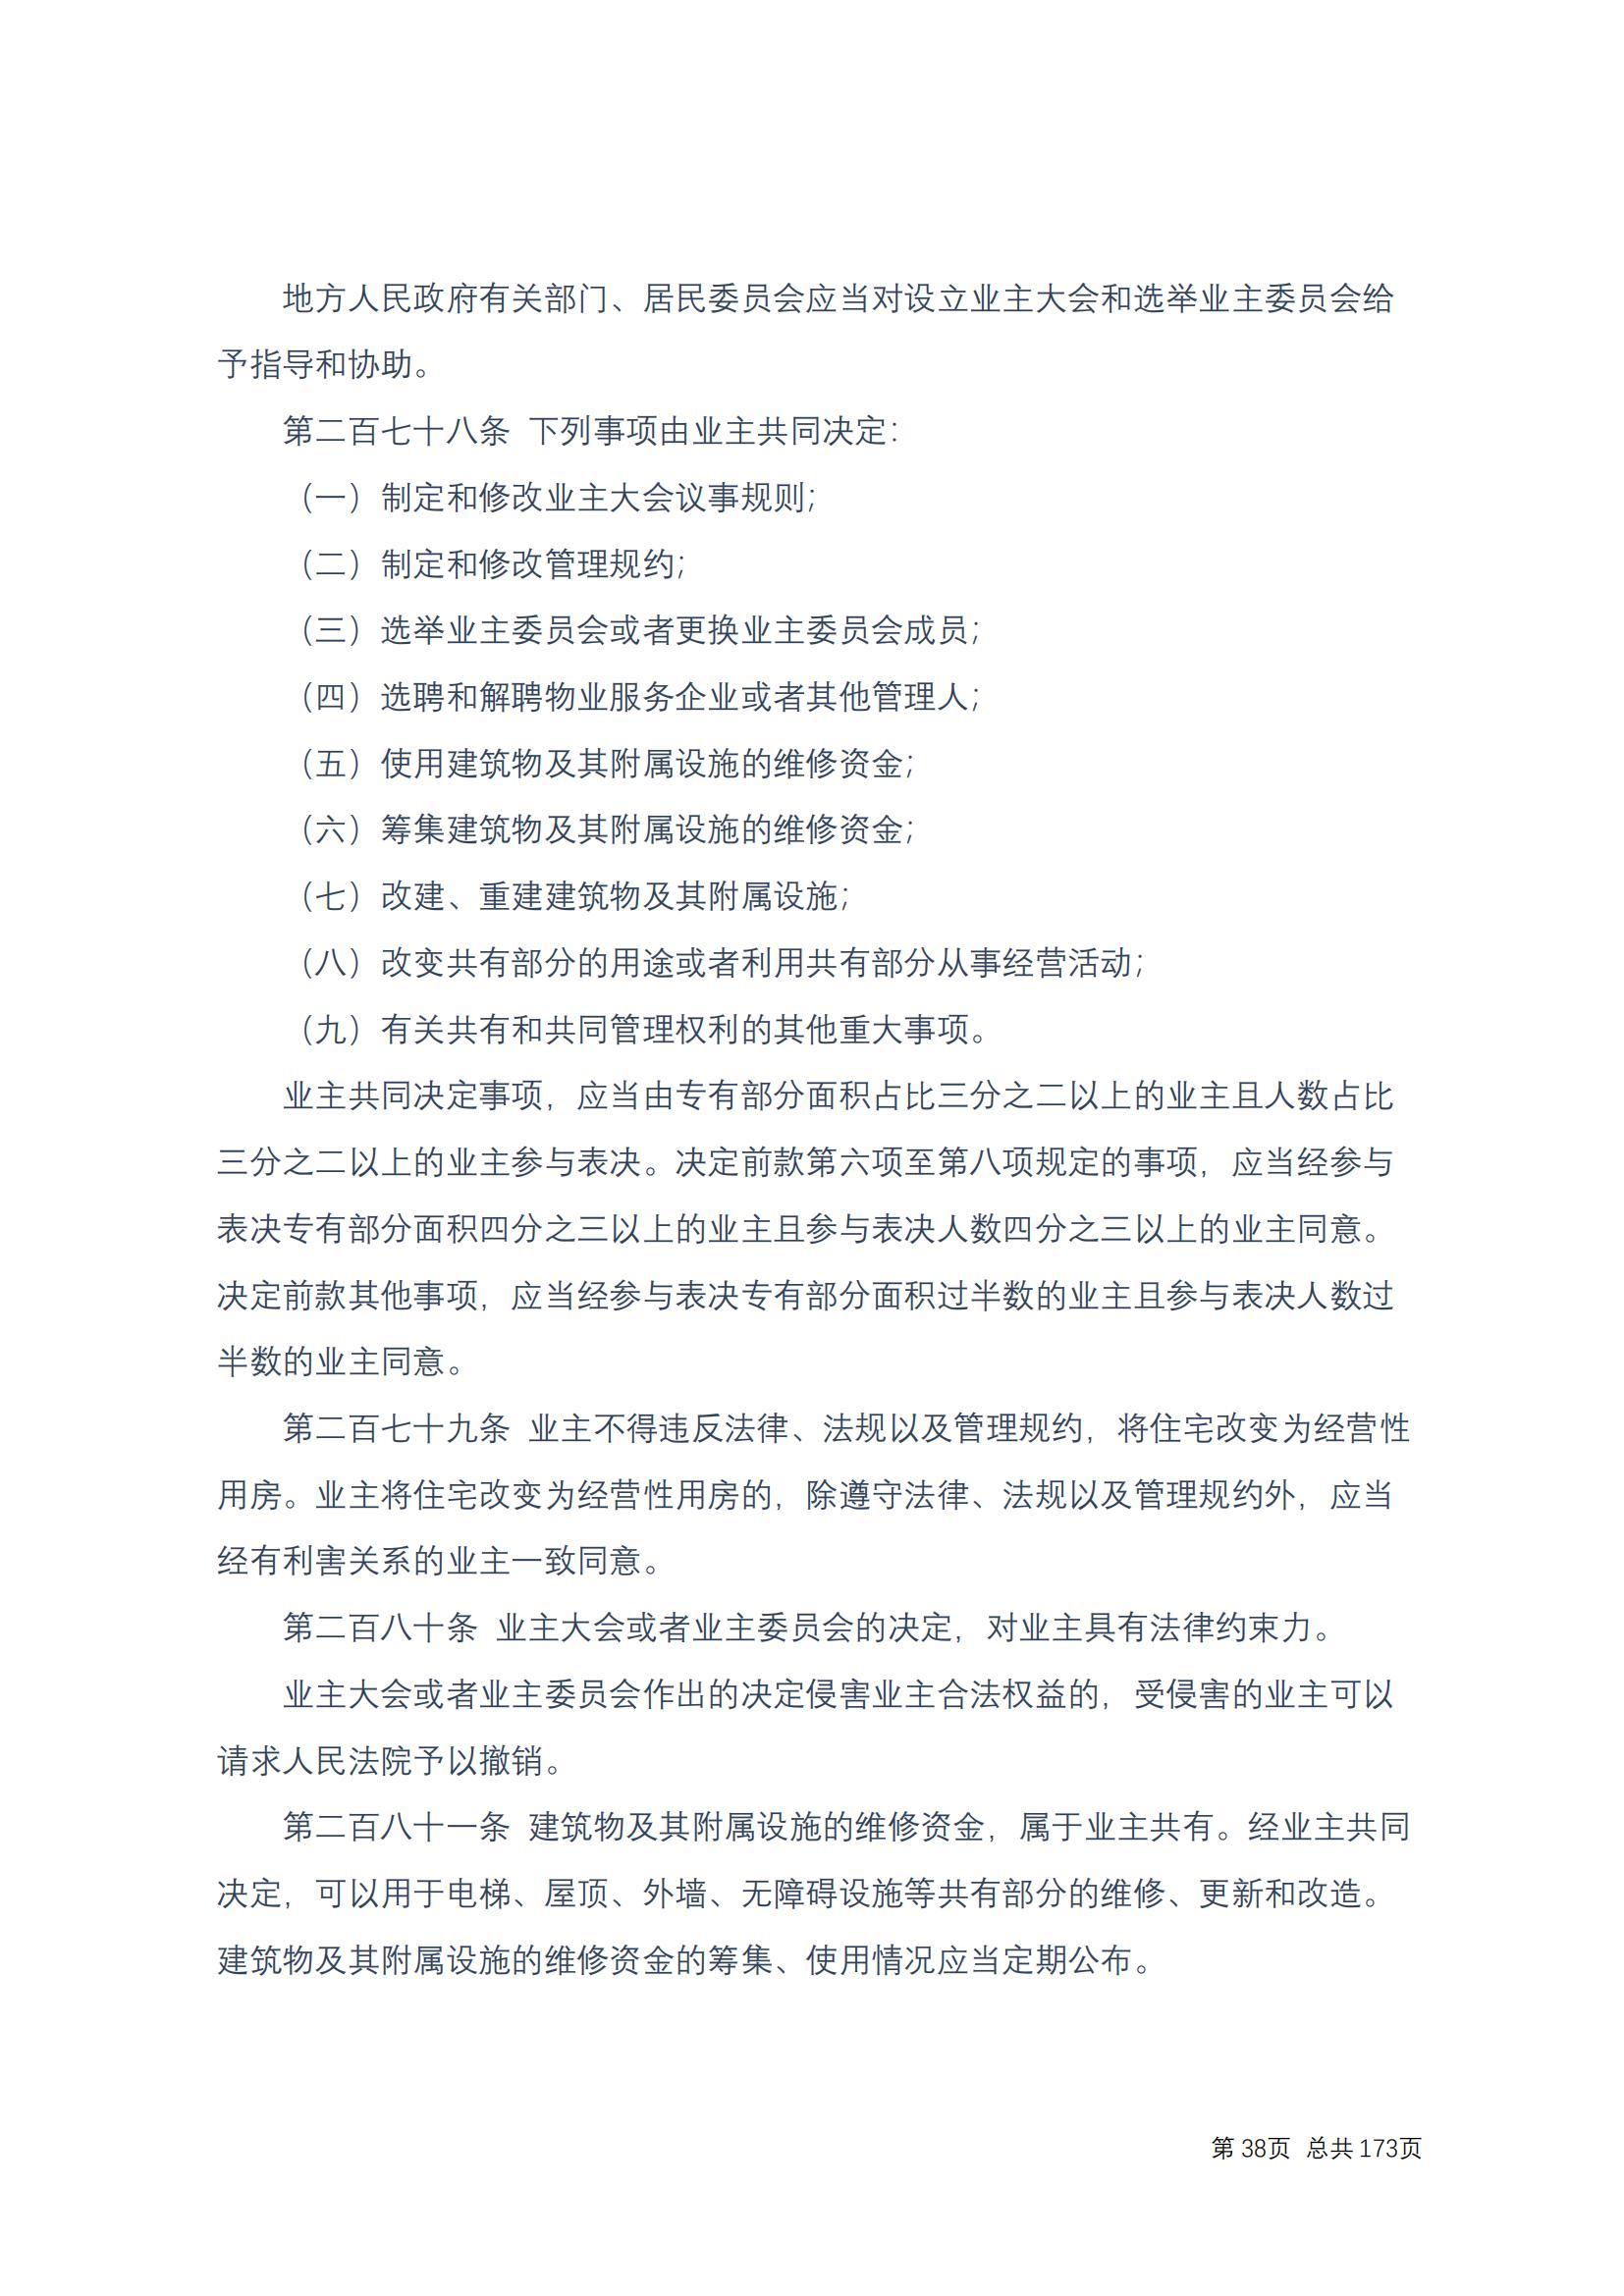 中华人民共和国民法典 修改过_37